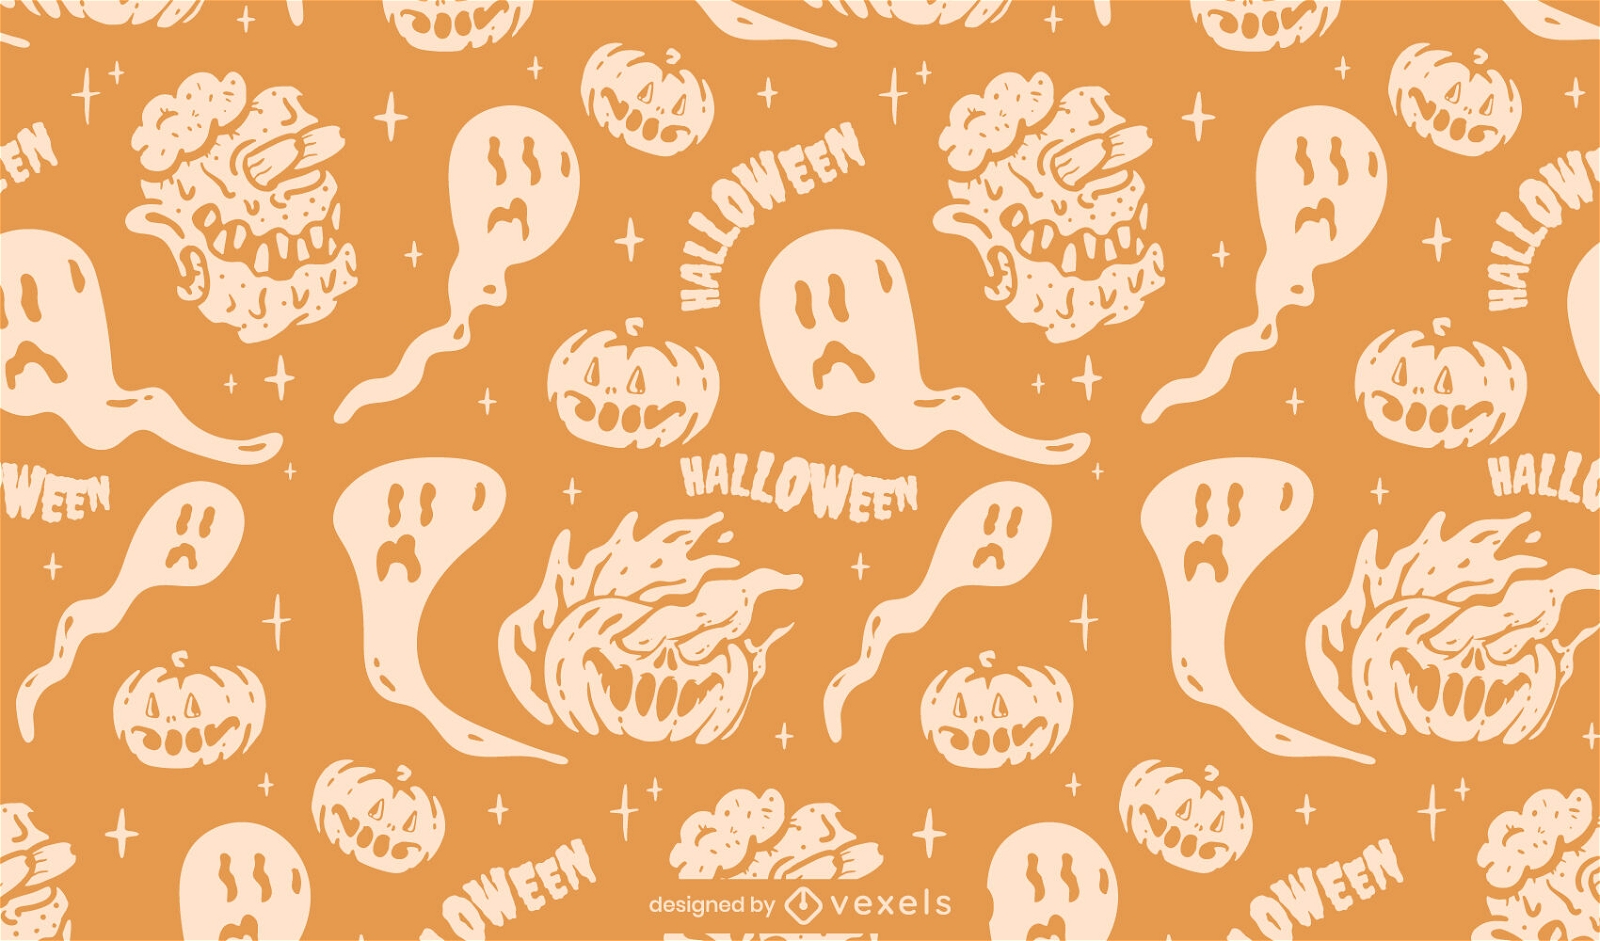 Halloween-Geister und K?rbismusterdesign